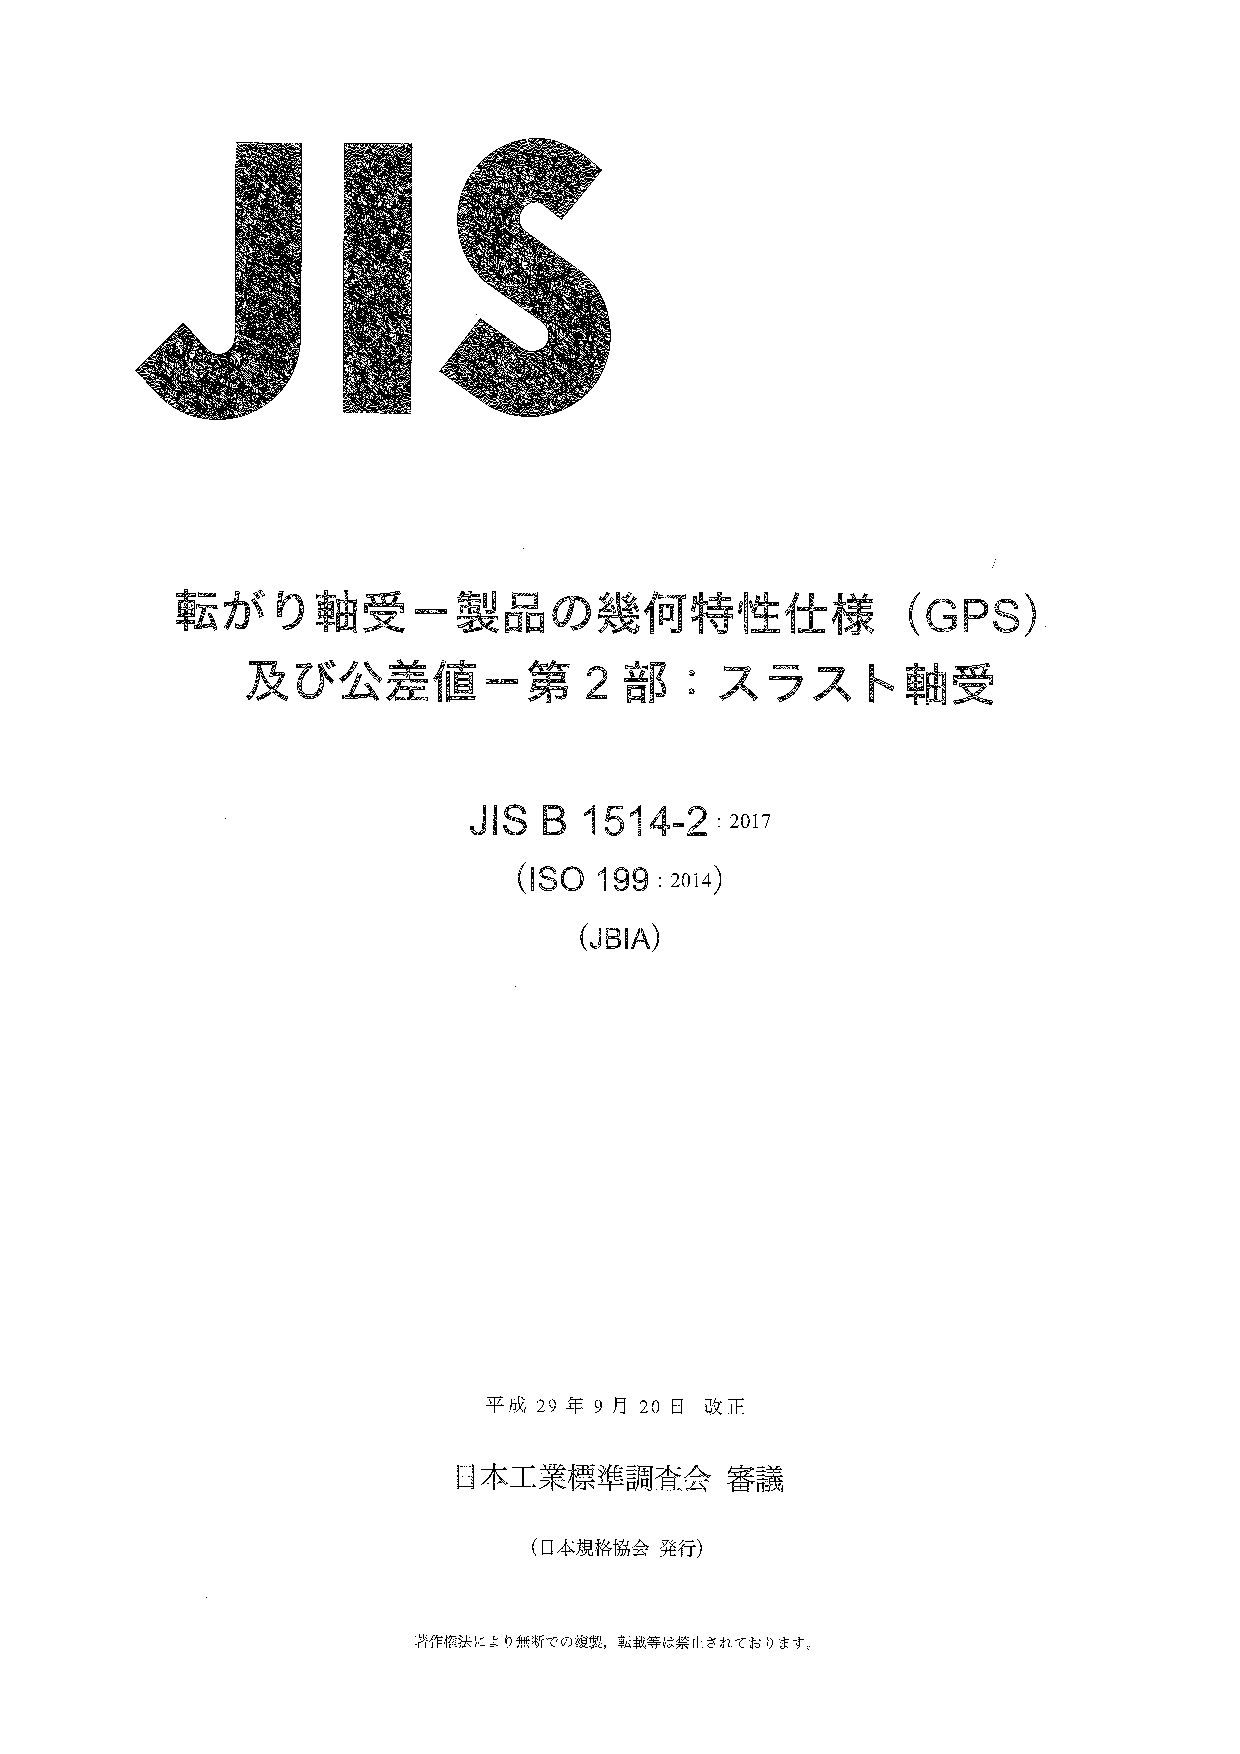 JIS B 1514-2:2017封面图